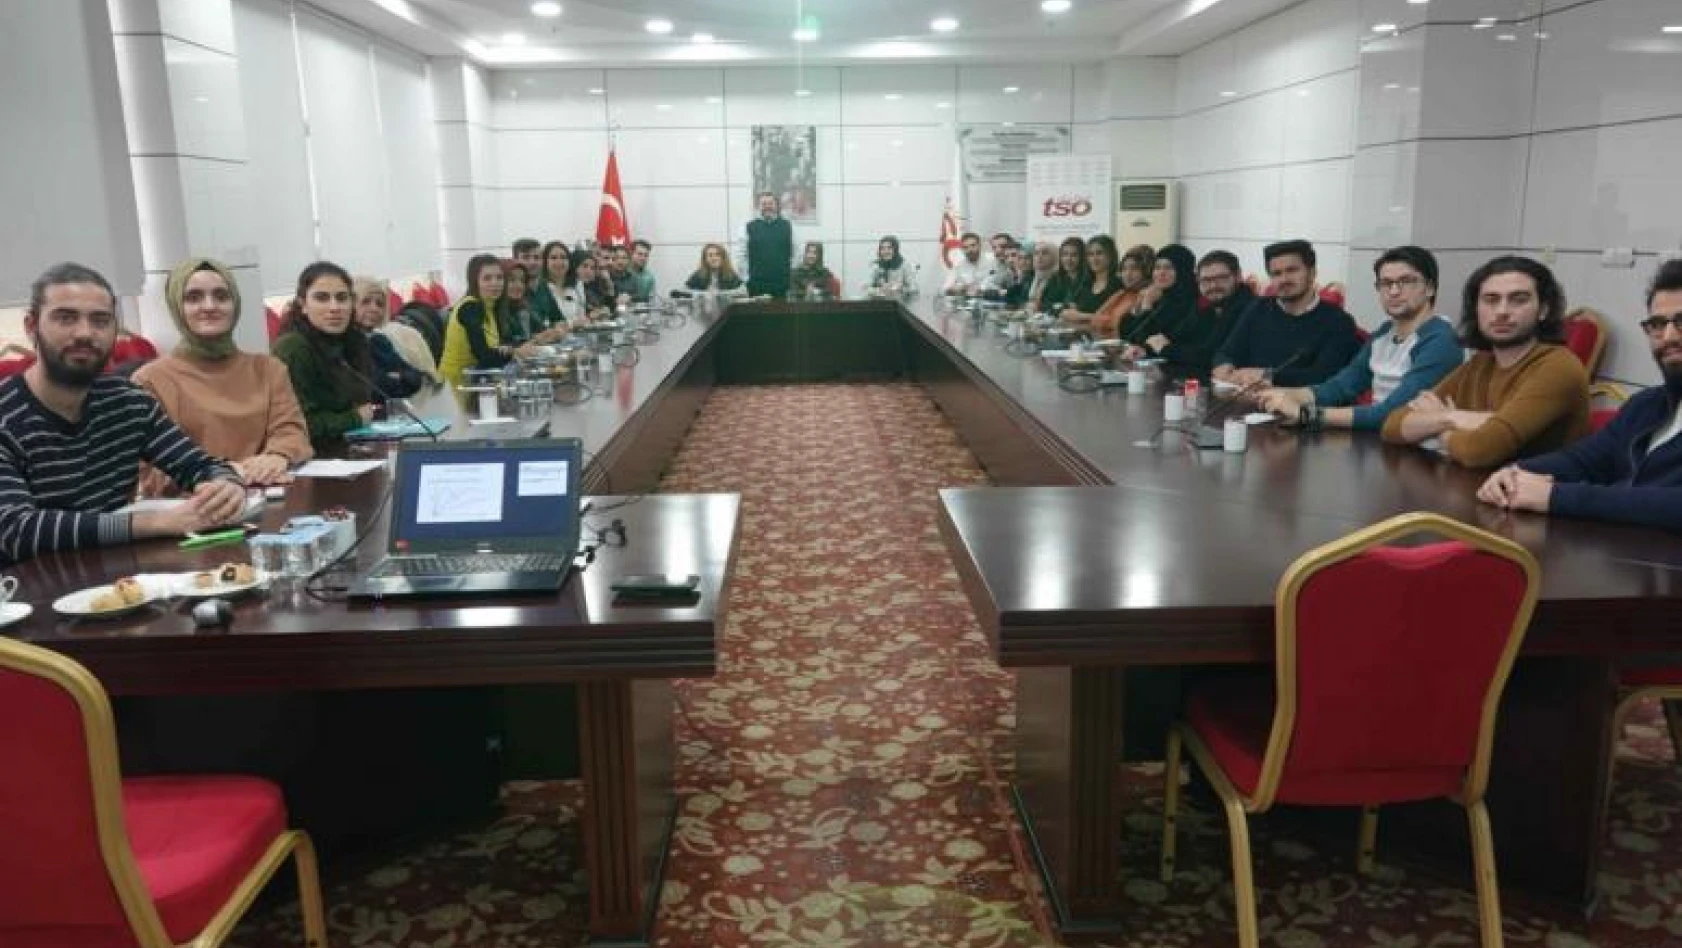 Elazığ Tso Akademi 2019 Yılı Eğitimleri Tamamlandı